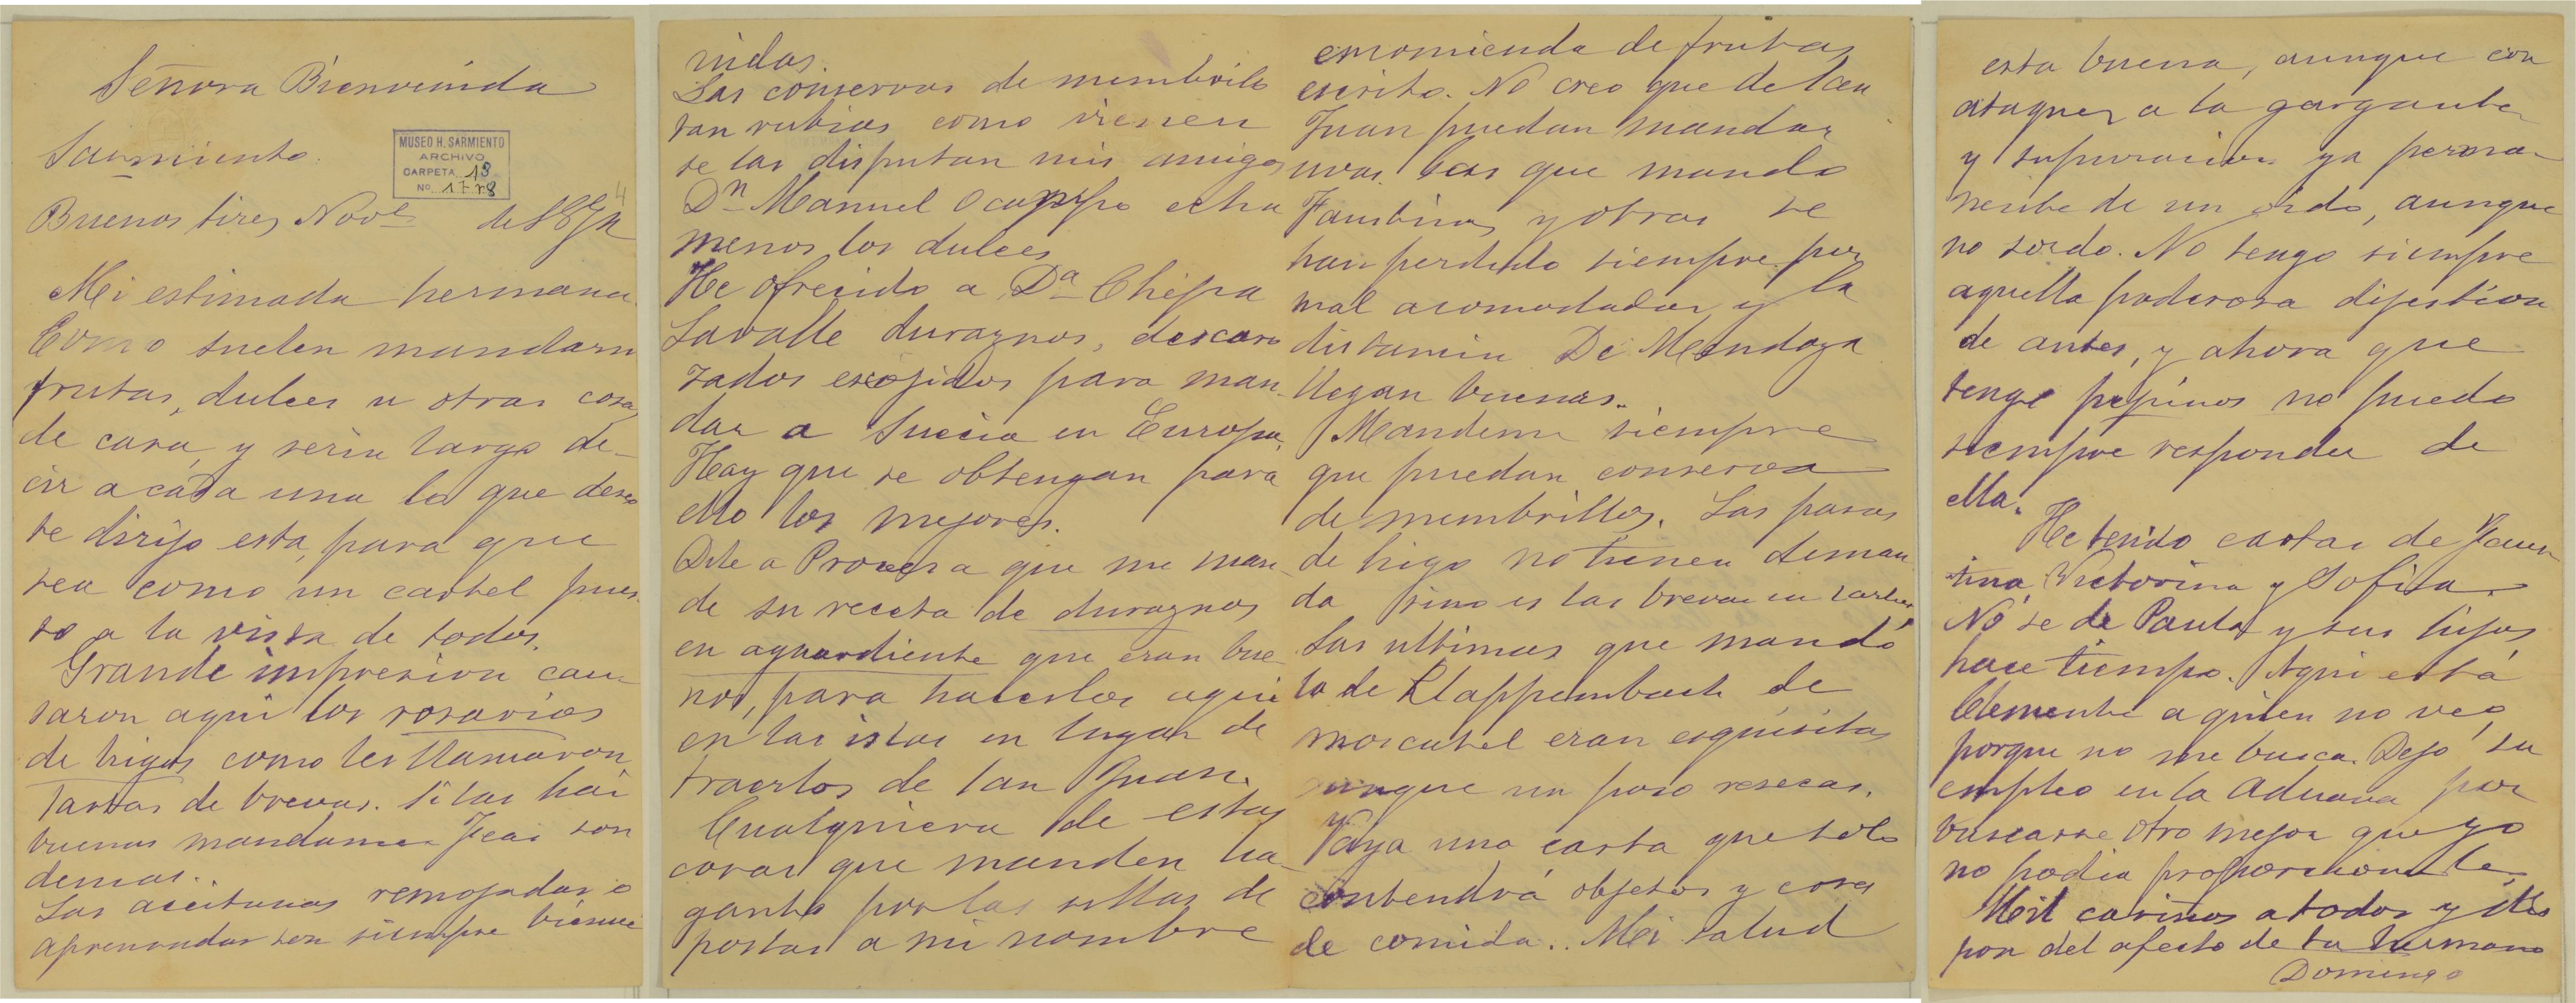 Carta a Bienvenida Sarmiento (noviembre de 1874)